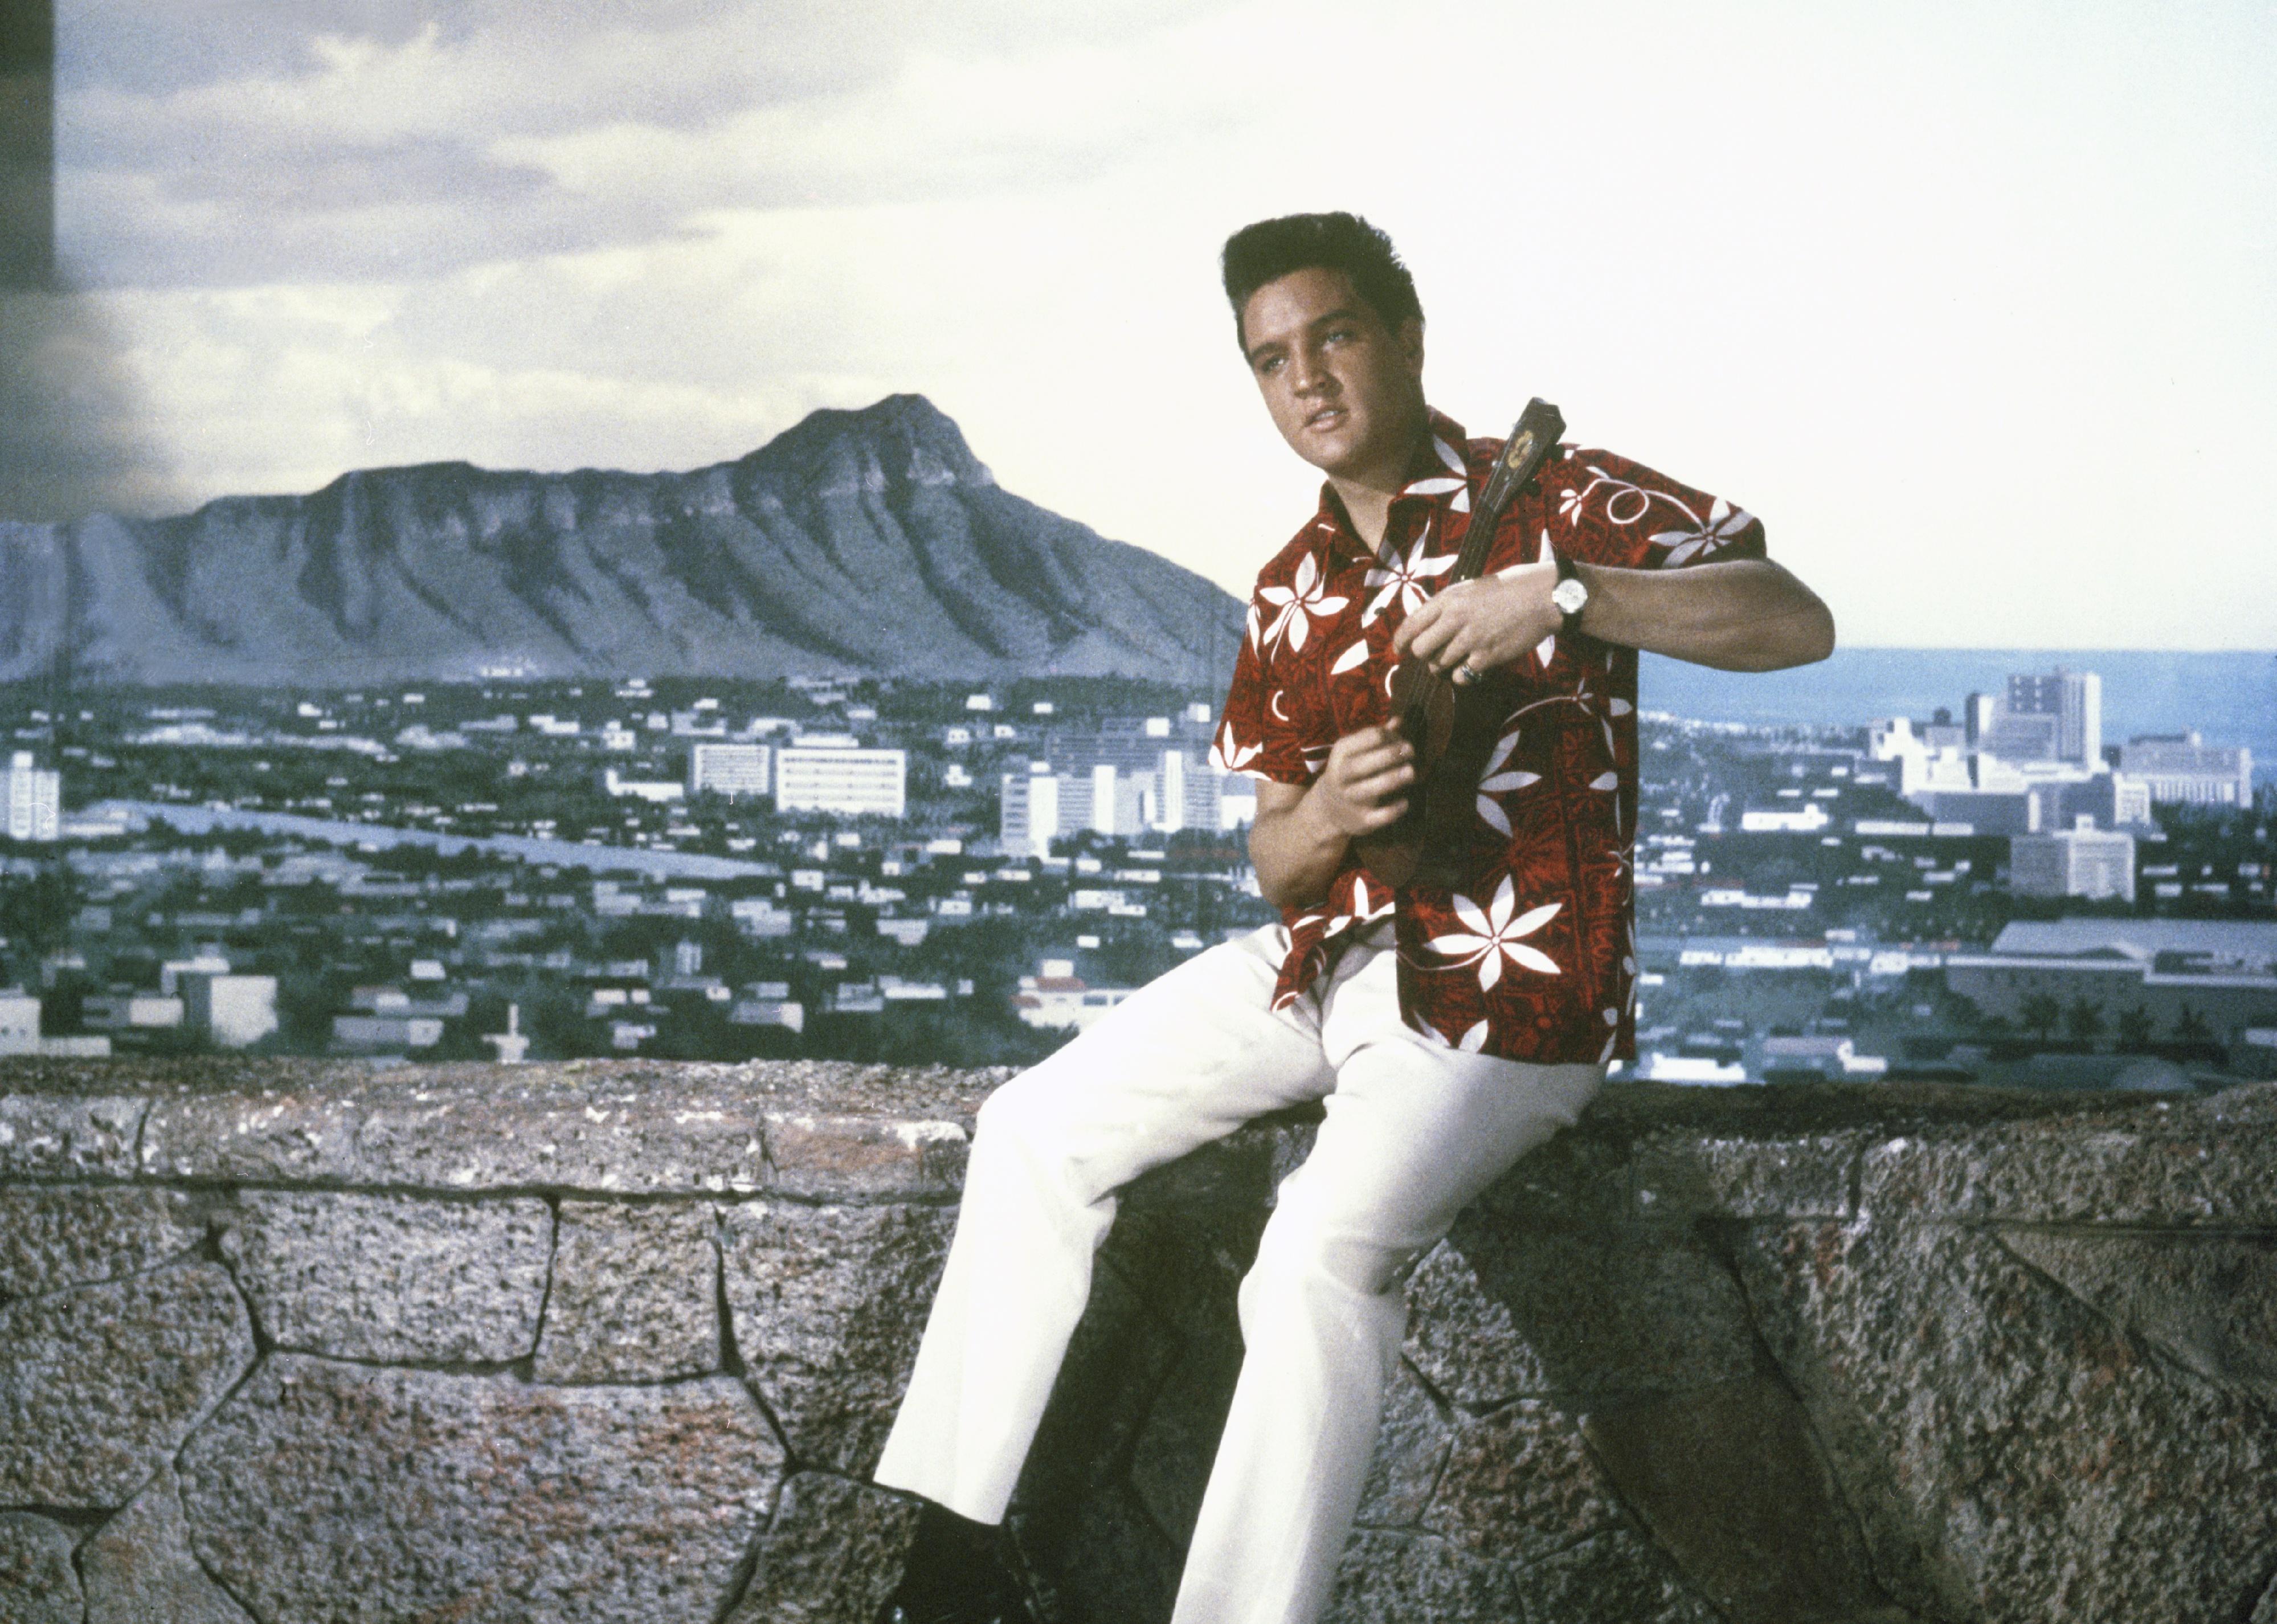 Elvis in a Hawaiian shirt on the set of Blue Hawaii.